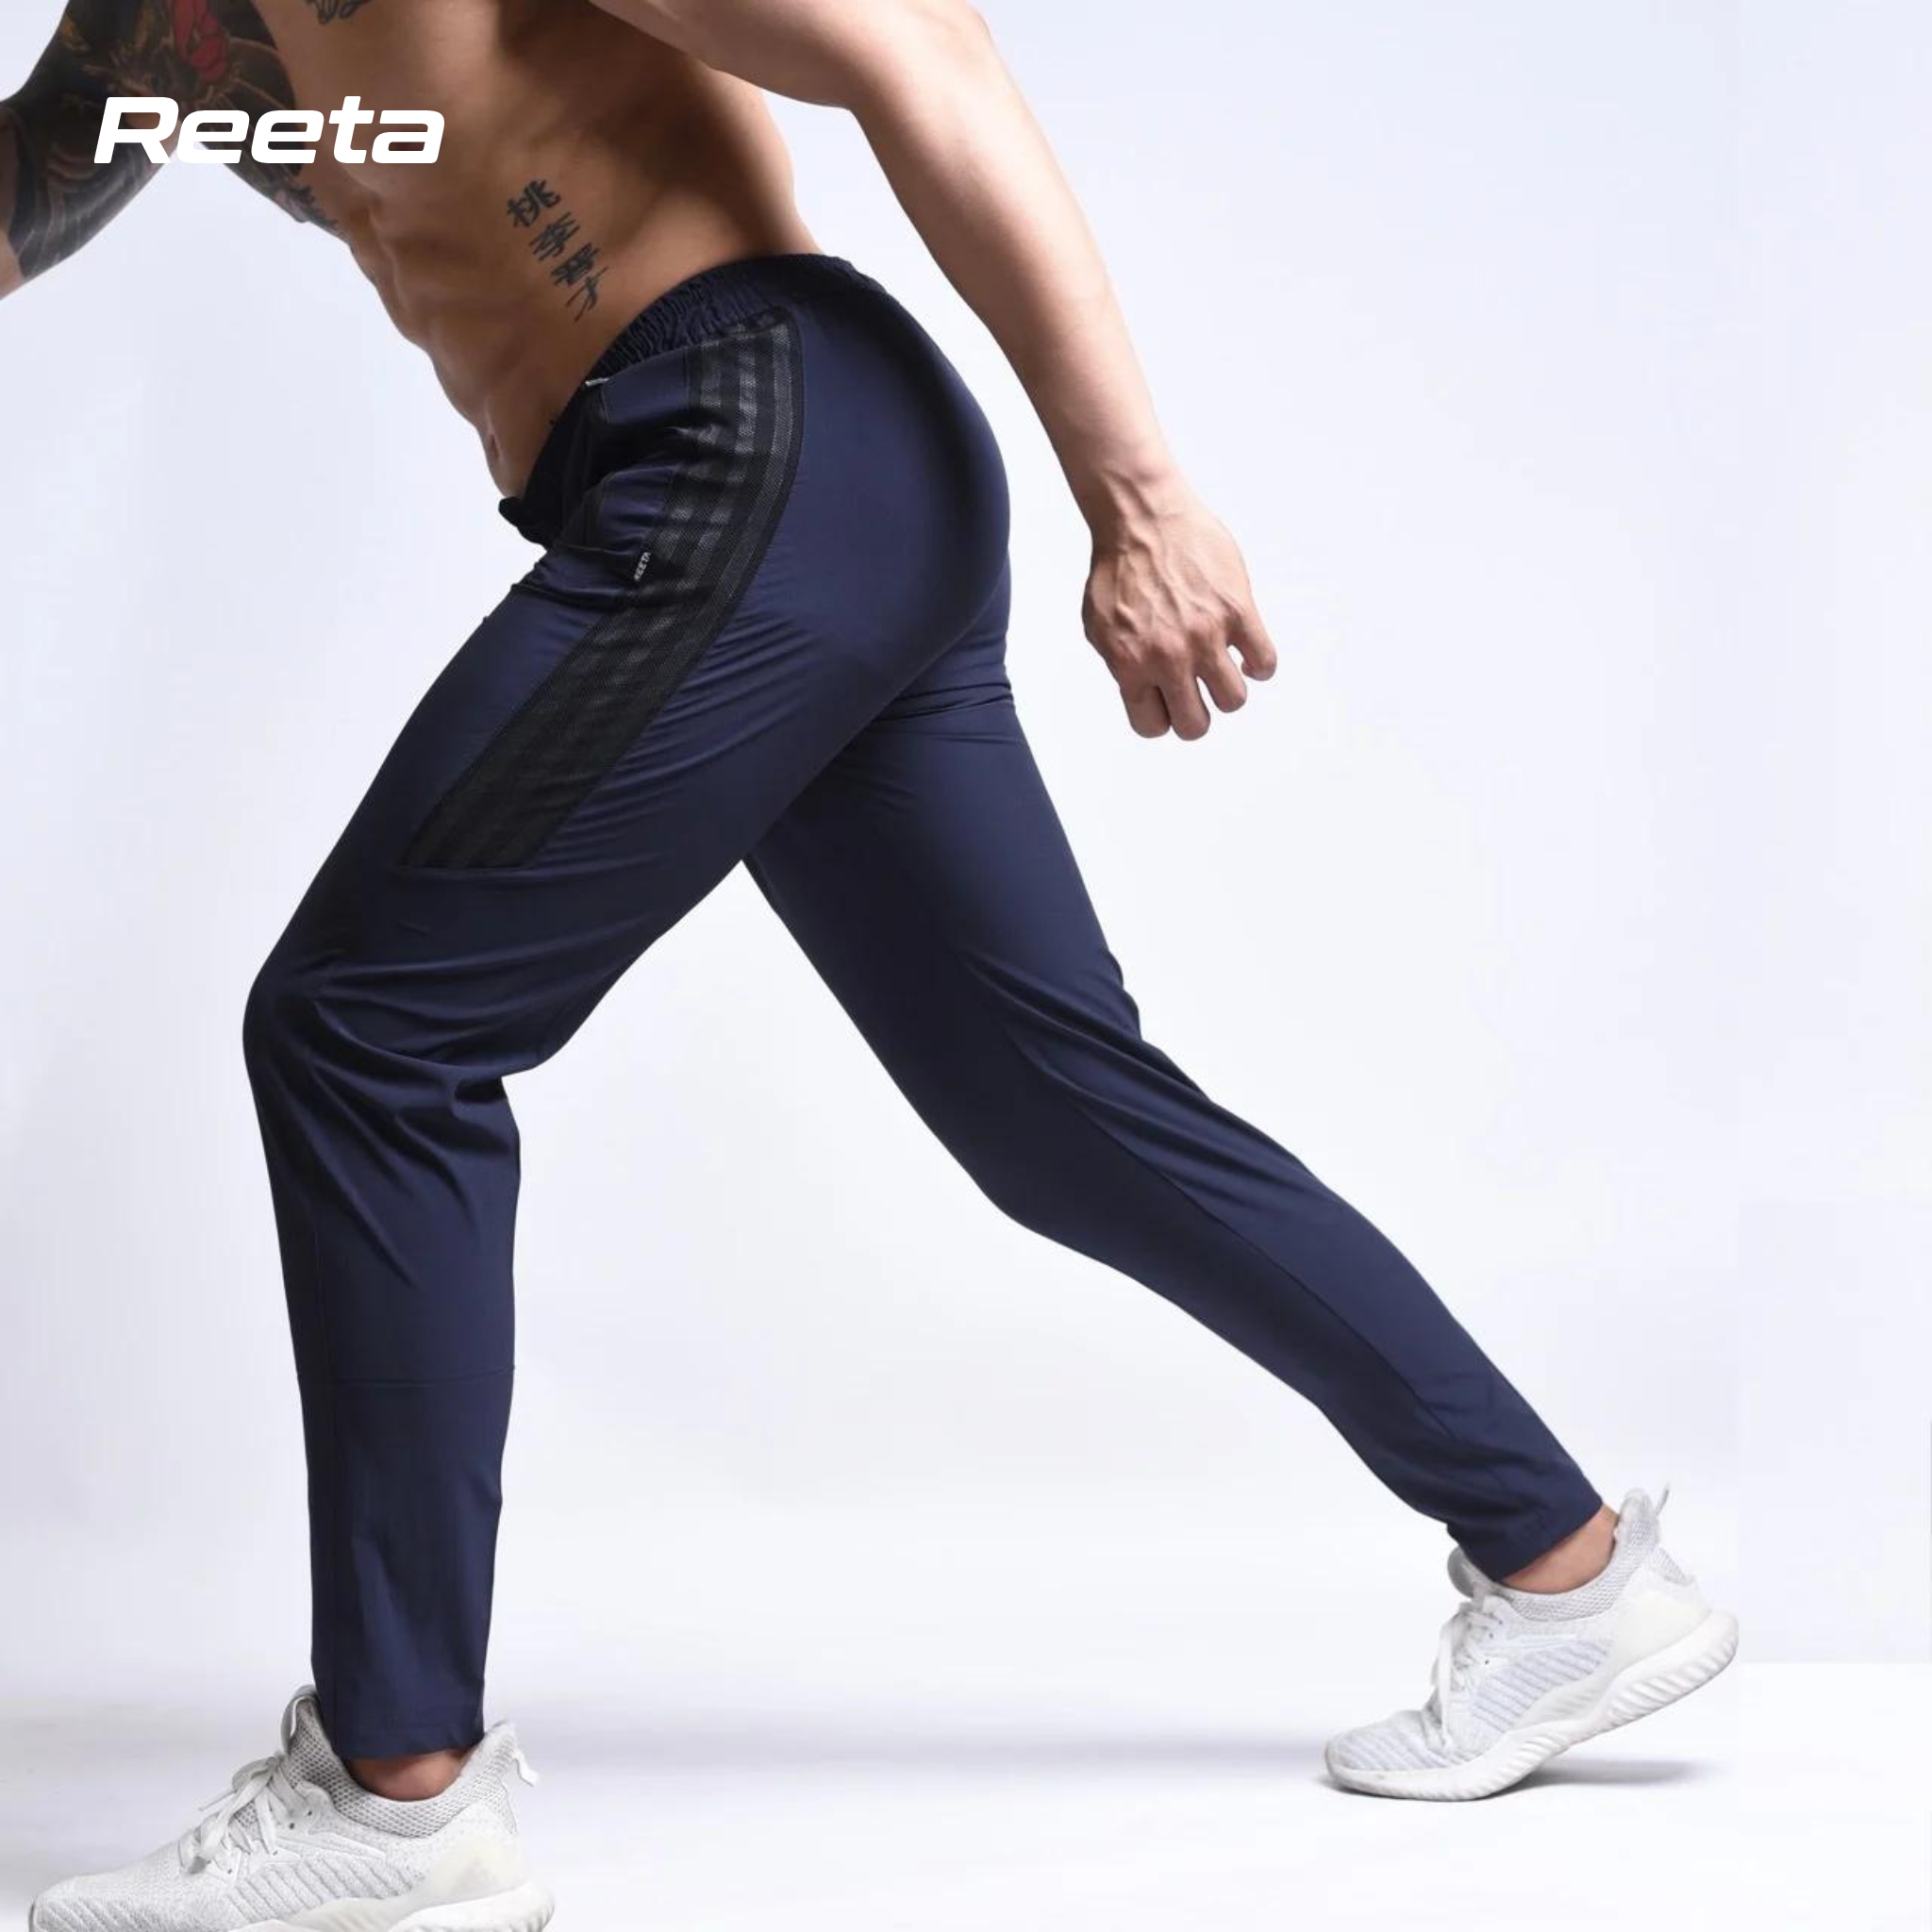 Quần dài thể thao nam REETA, chất vải gió mềm mịn, phối lưới phần hông trẻ trung thể hiện phong cách mạnh mẽ - A1482